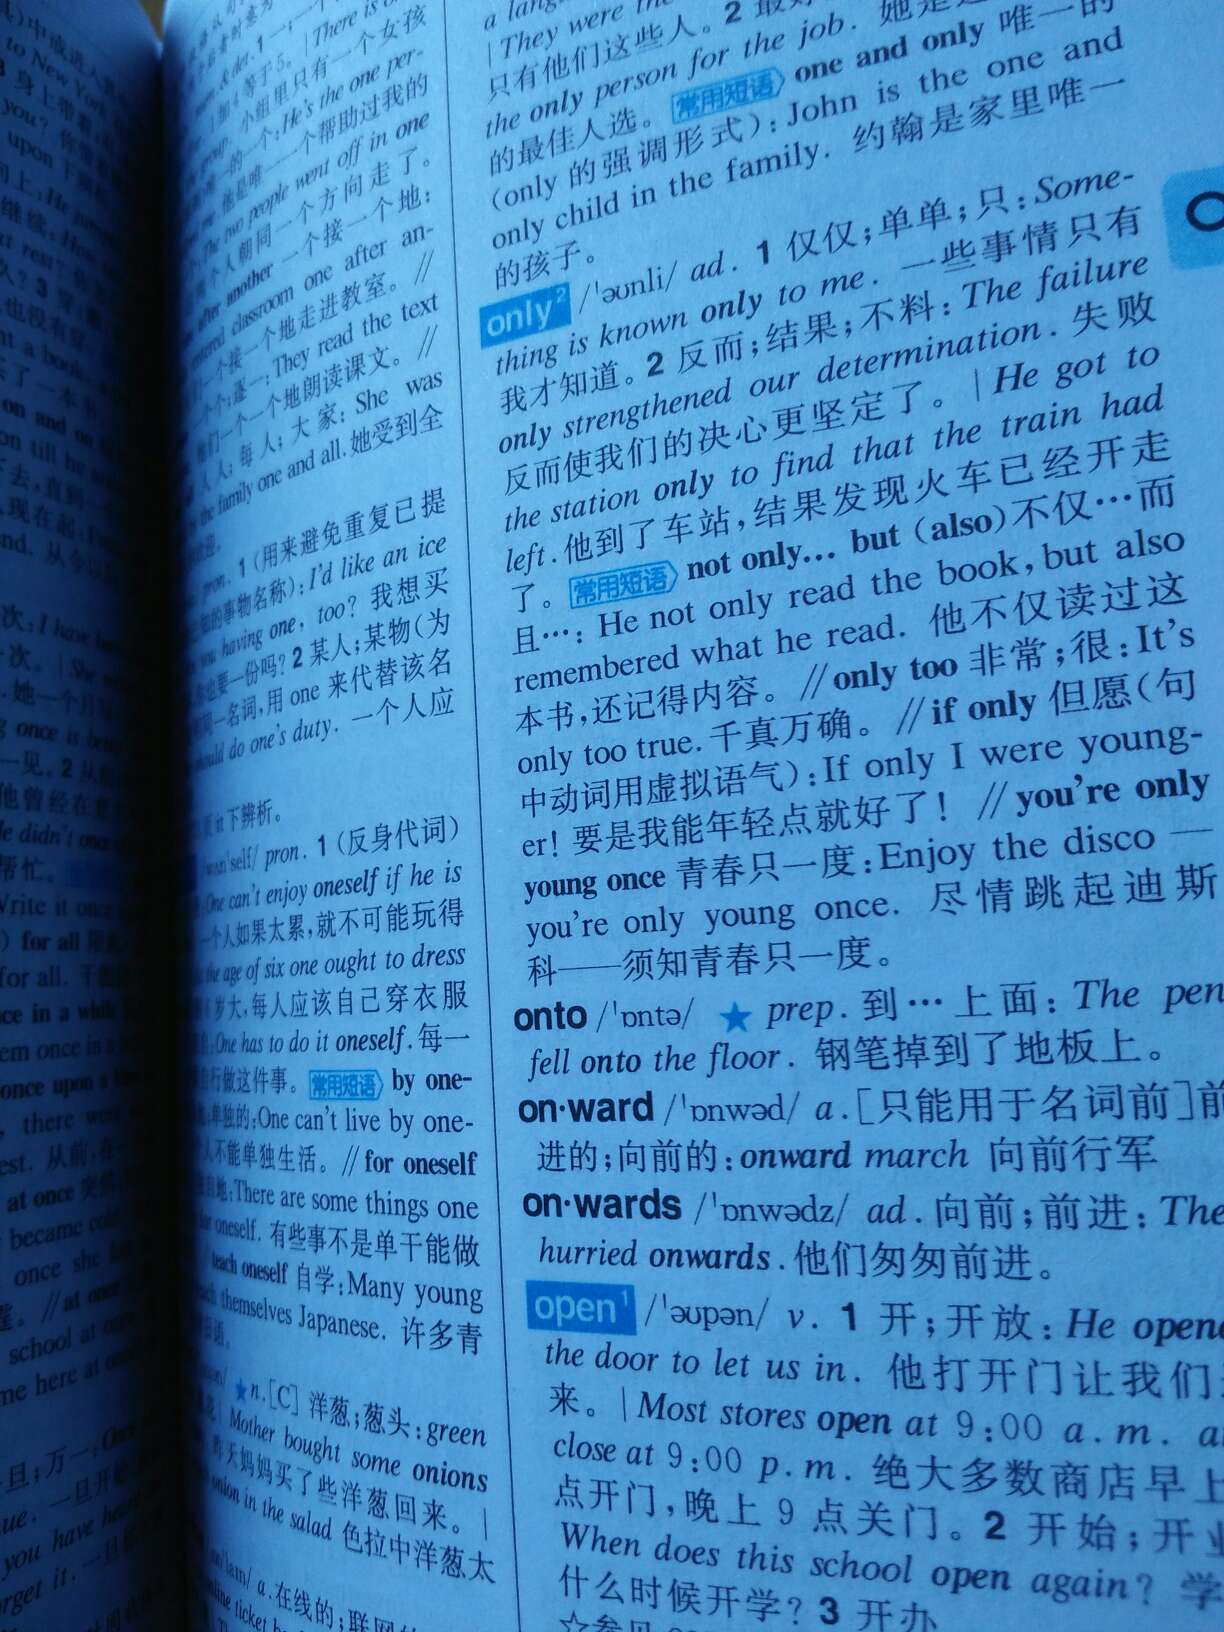 字典的质量很好，纸张不错，内容也丰富，相信对女儿英语学习有帮助。快递送货速度快，态度好。